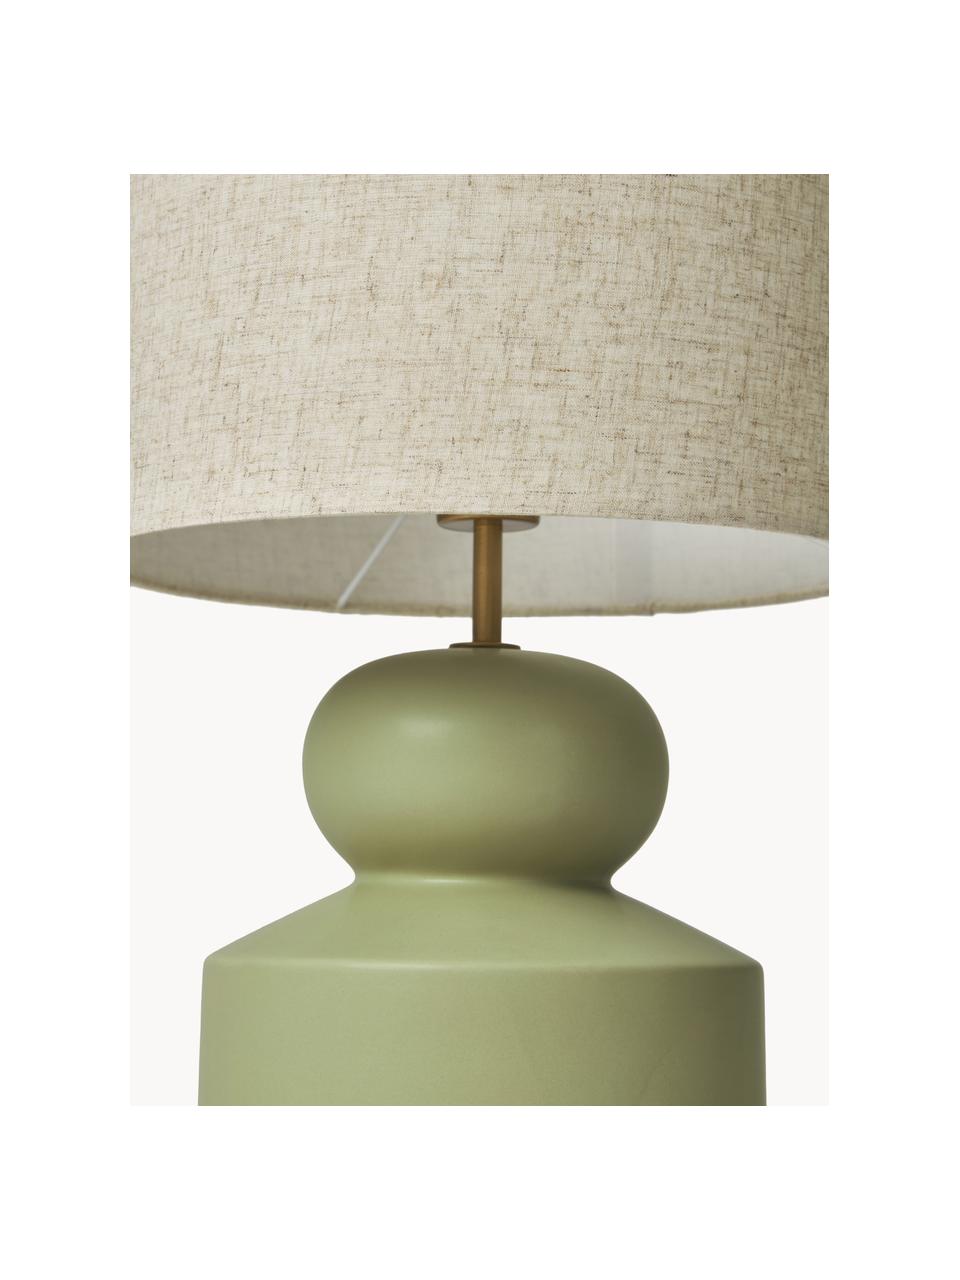 Grote keramische tafellamp Georgina, Lampenkap: textiel, Lampvoet: keramiek, Decoratie: vermessingd metaal, Beige, groen, Ø 33 x H 52 cm